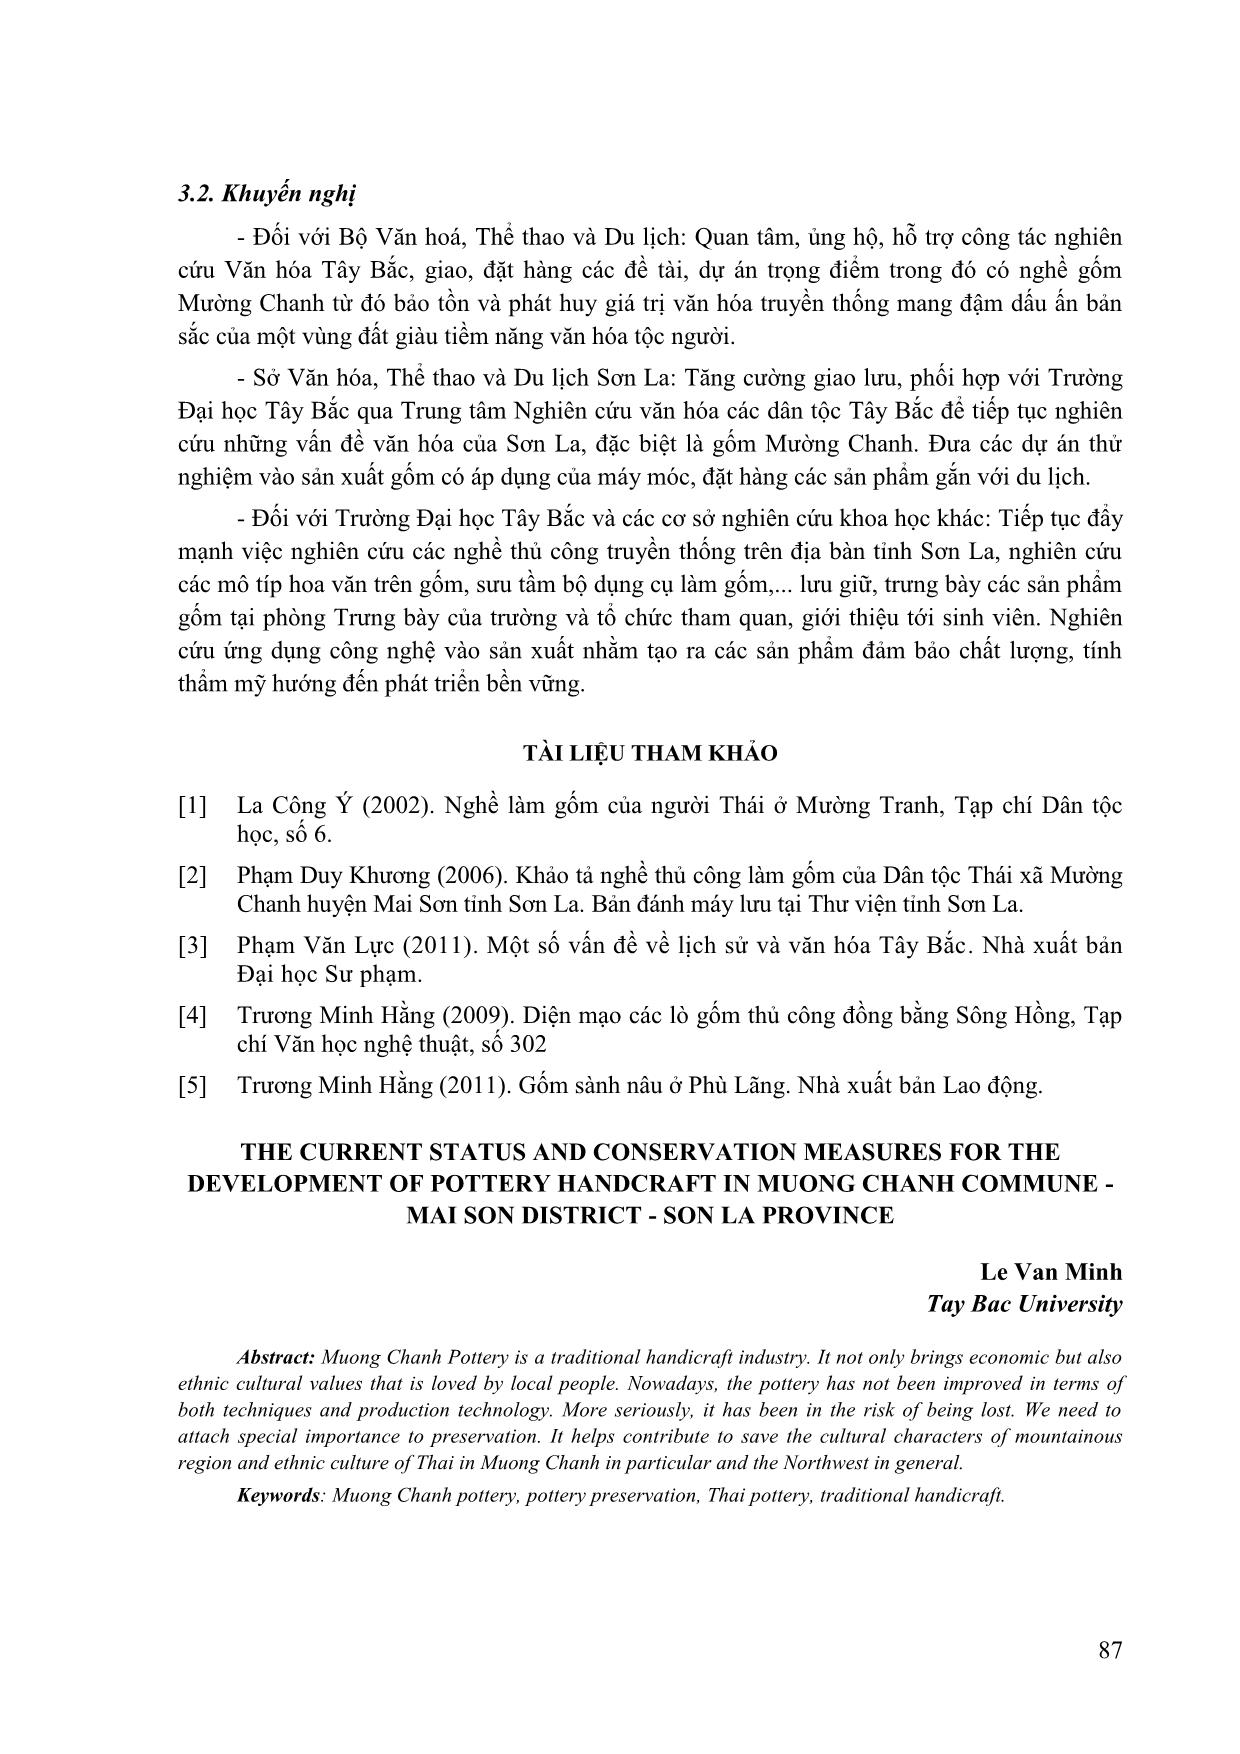 Hiện trạng và giải pháp bảo tồn, phát triển nghề gốm Mường chanh - Mai sơn - Sơn La trang 6